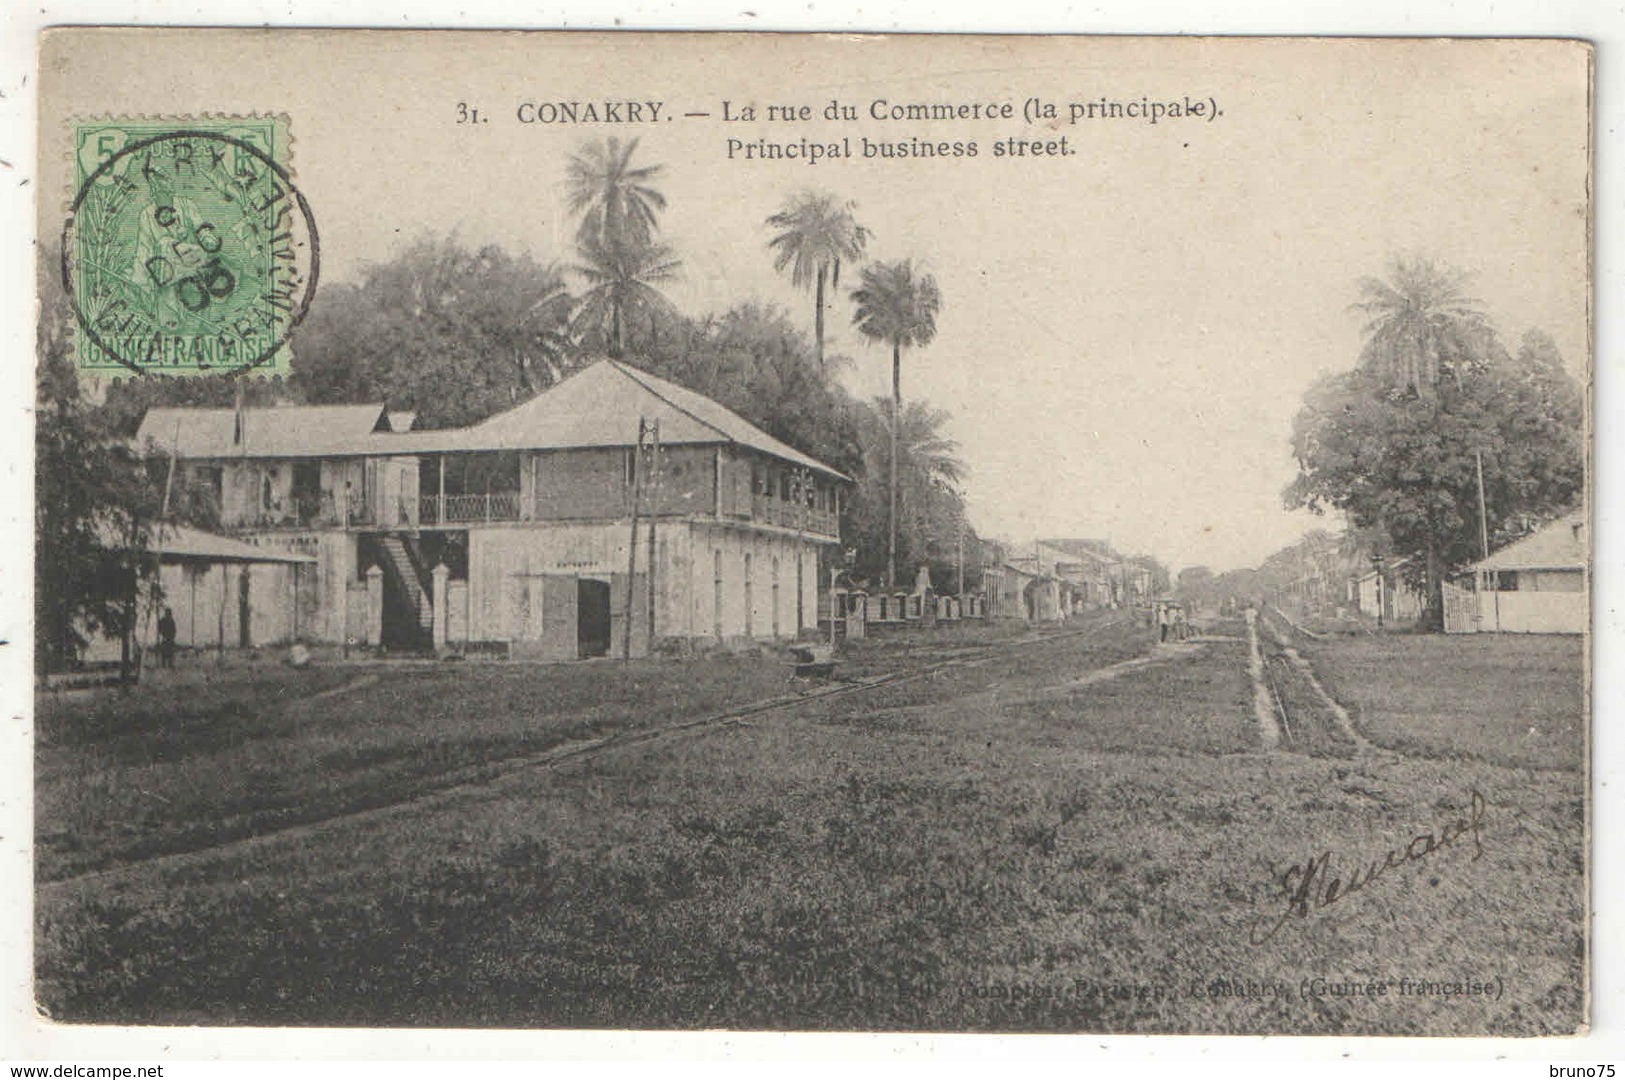 CONAKRY - La Rue Du Commerce (la Principale) - Comptoir Parisien 31 - 1905 - French Guinea